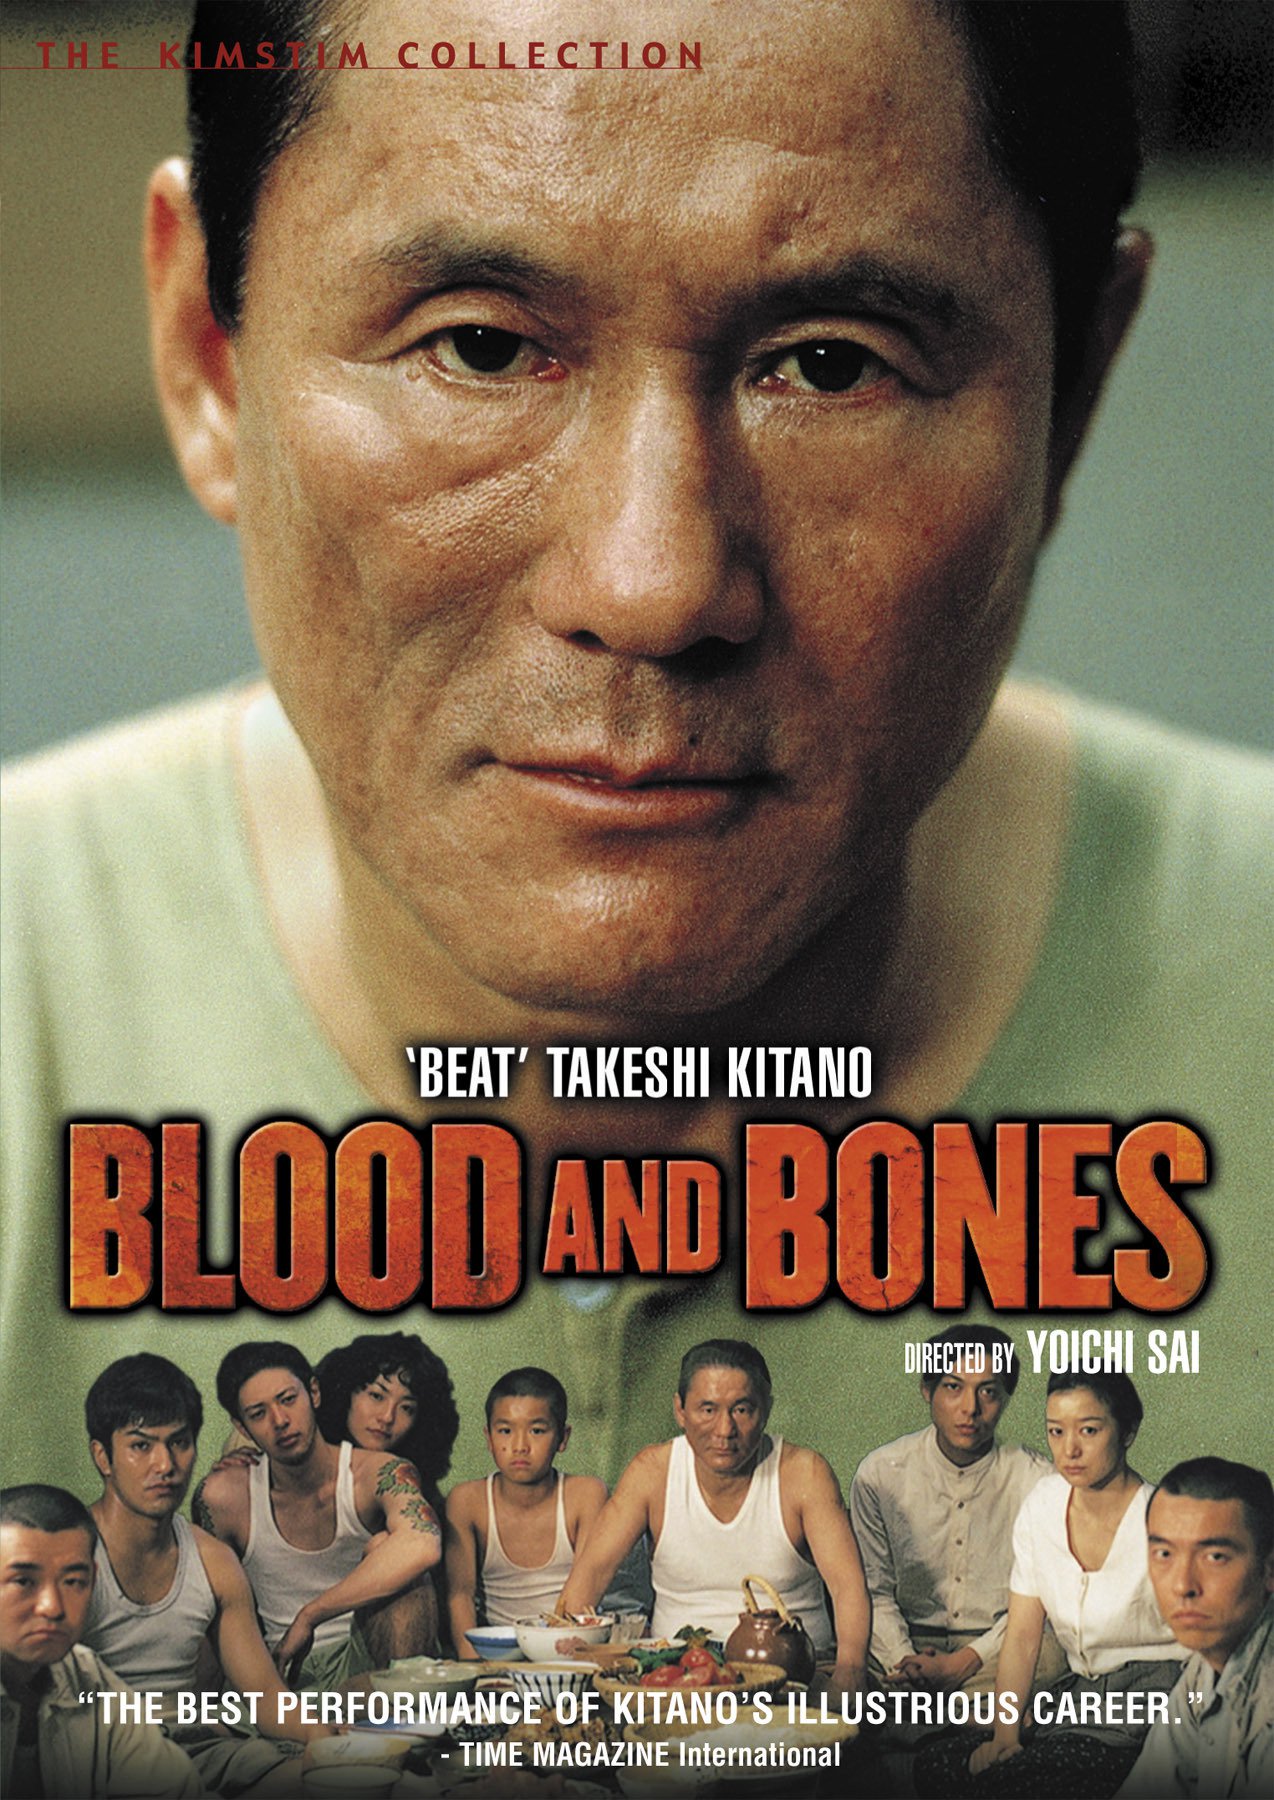 Plakat von "Blood and Bones"